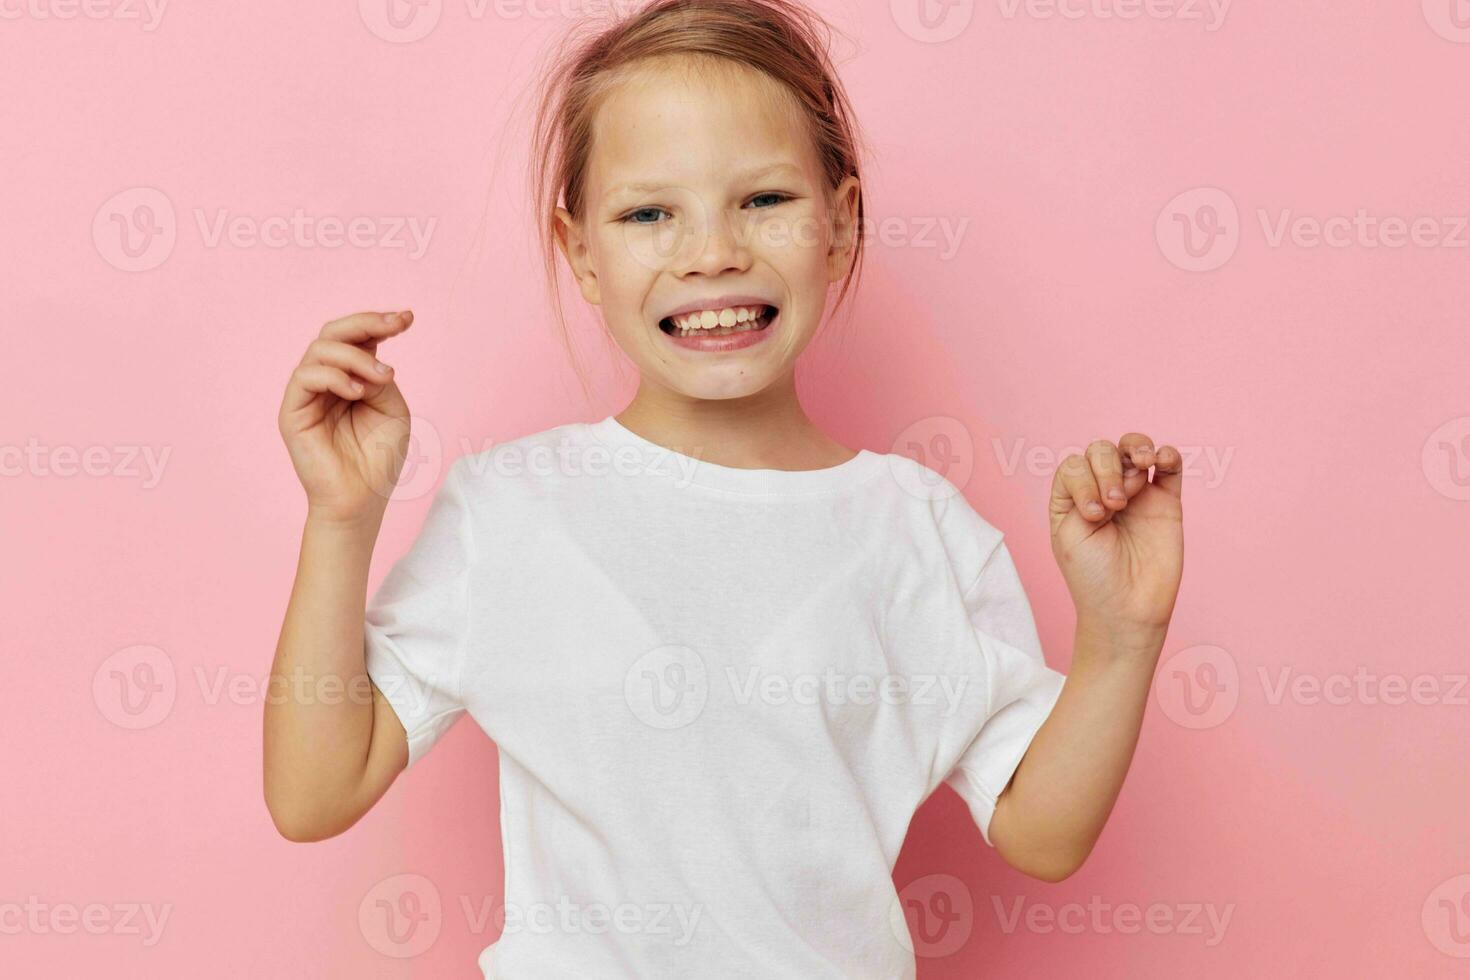 linda niña en un blanco camiseta sonrisa infancia inalterado foto